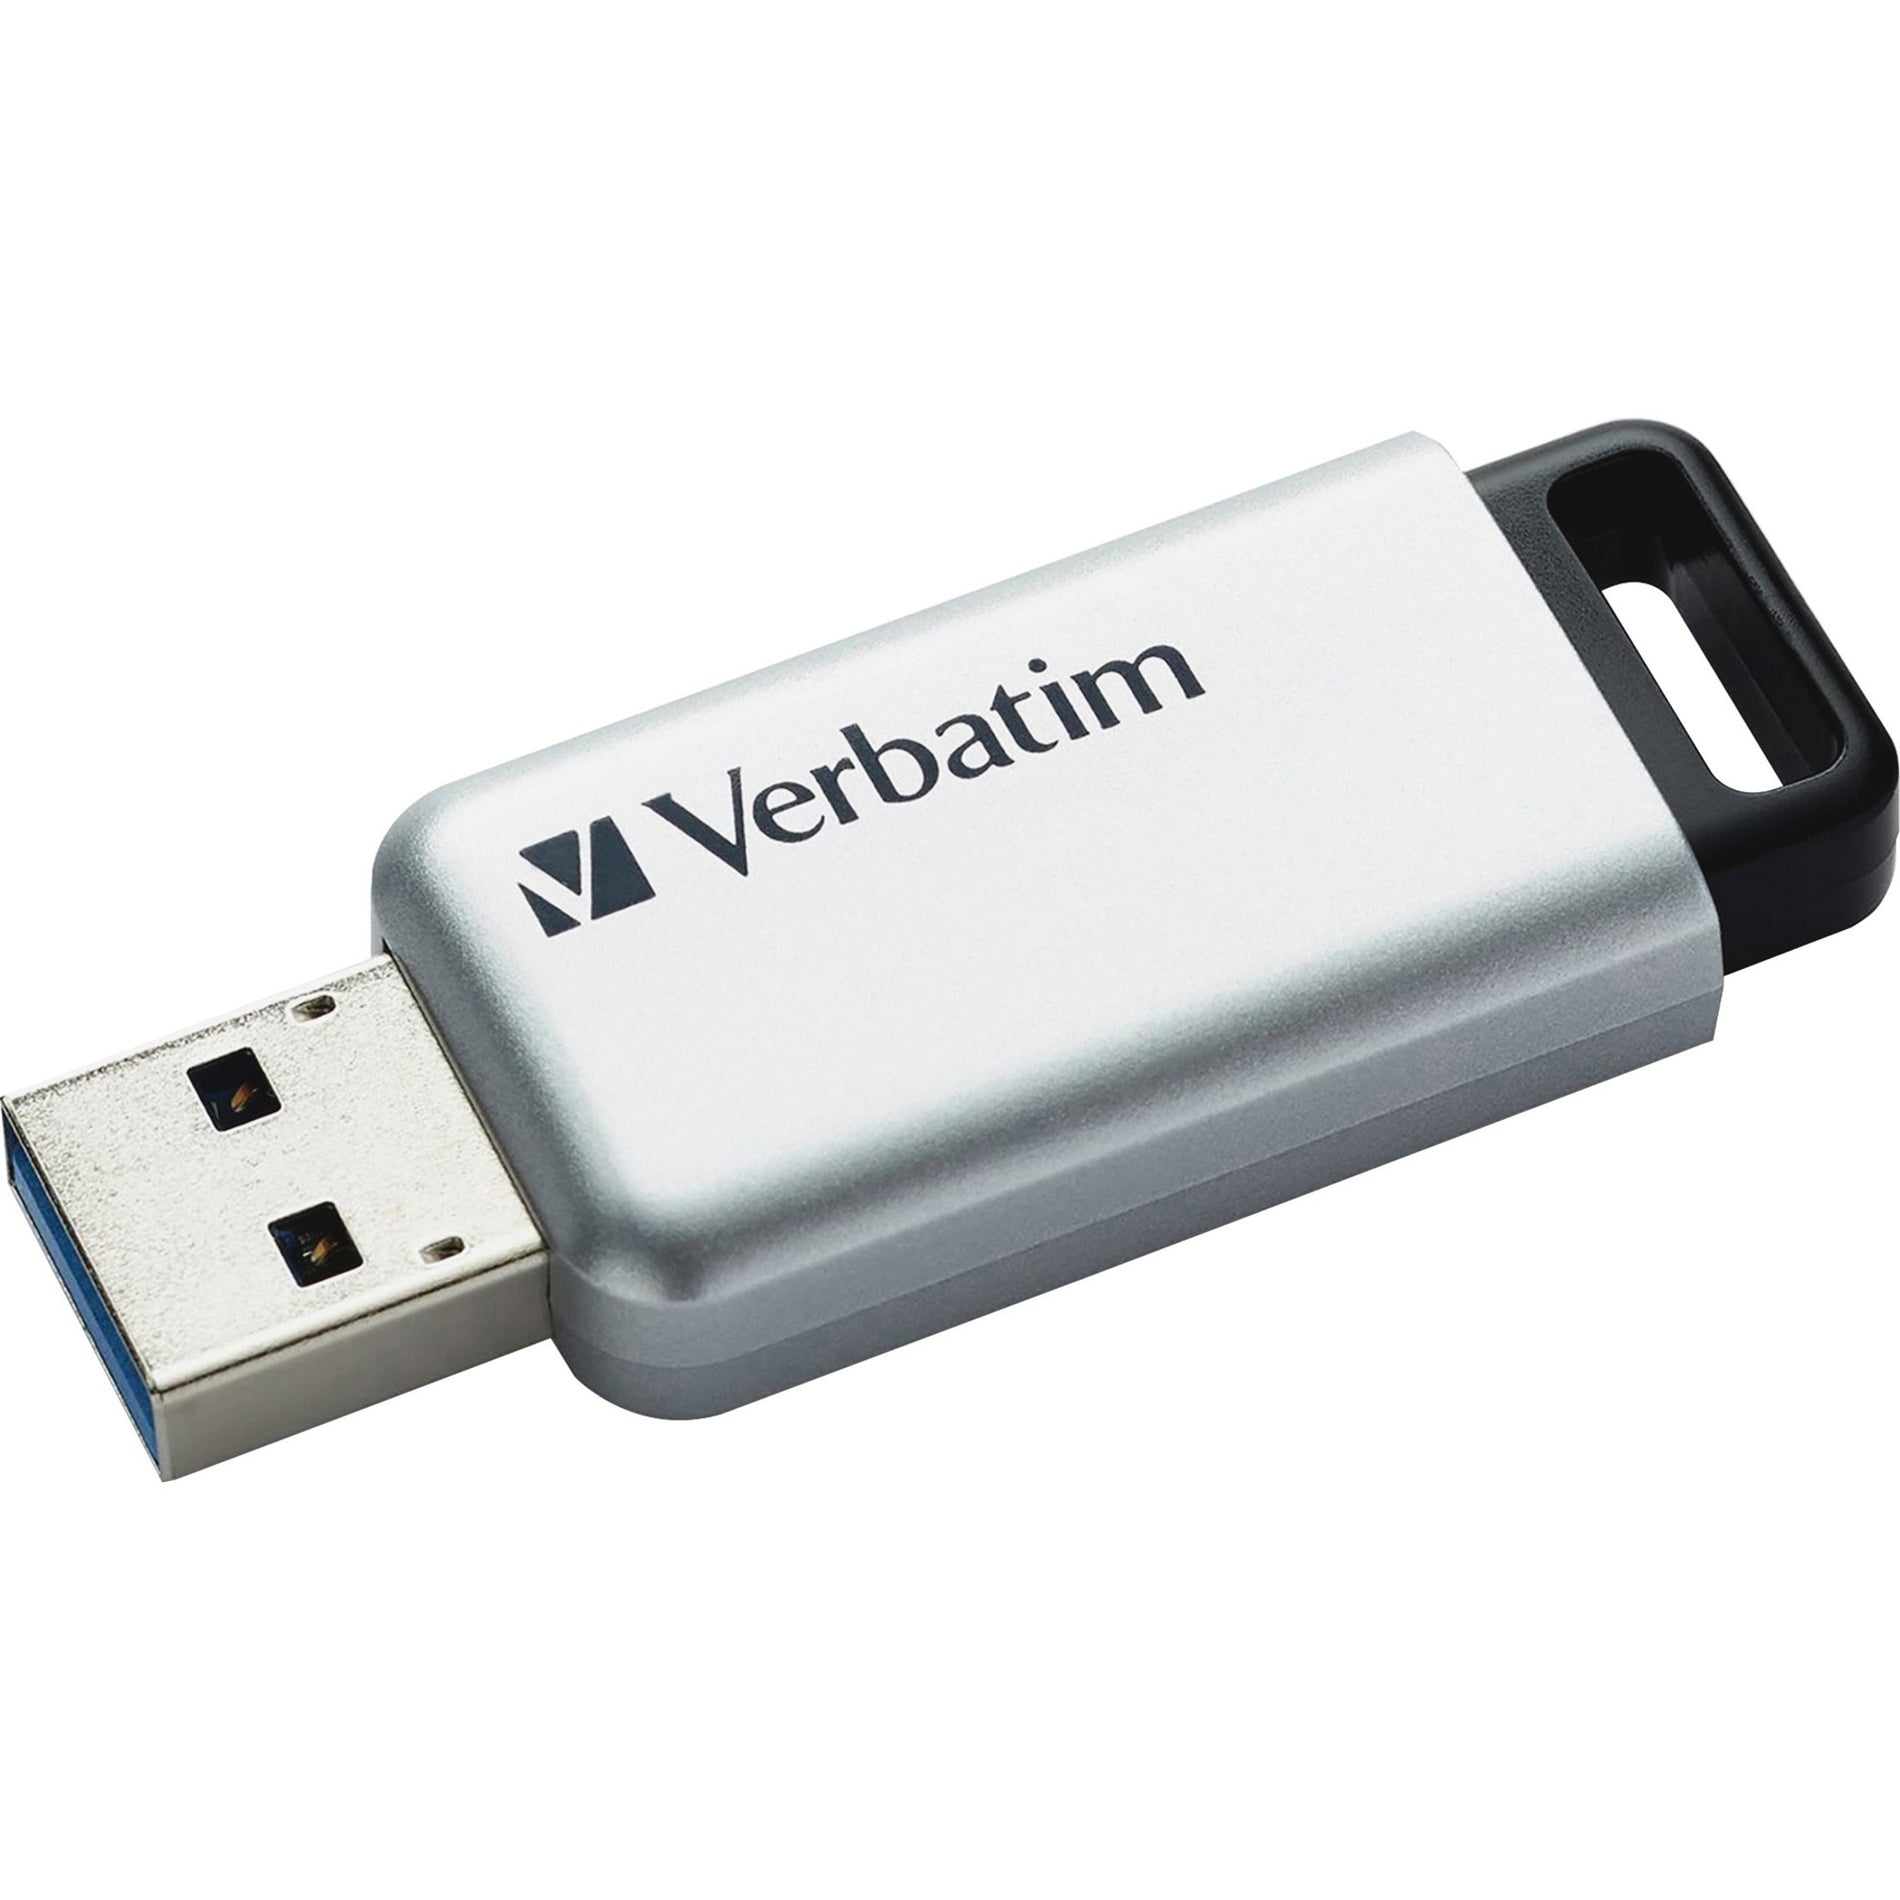 Verbatim 98666 Store 'n' Go Secure Pro USB 3.0 Flash Drive 64GB SR